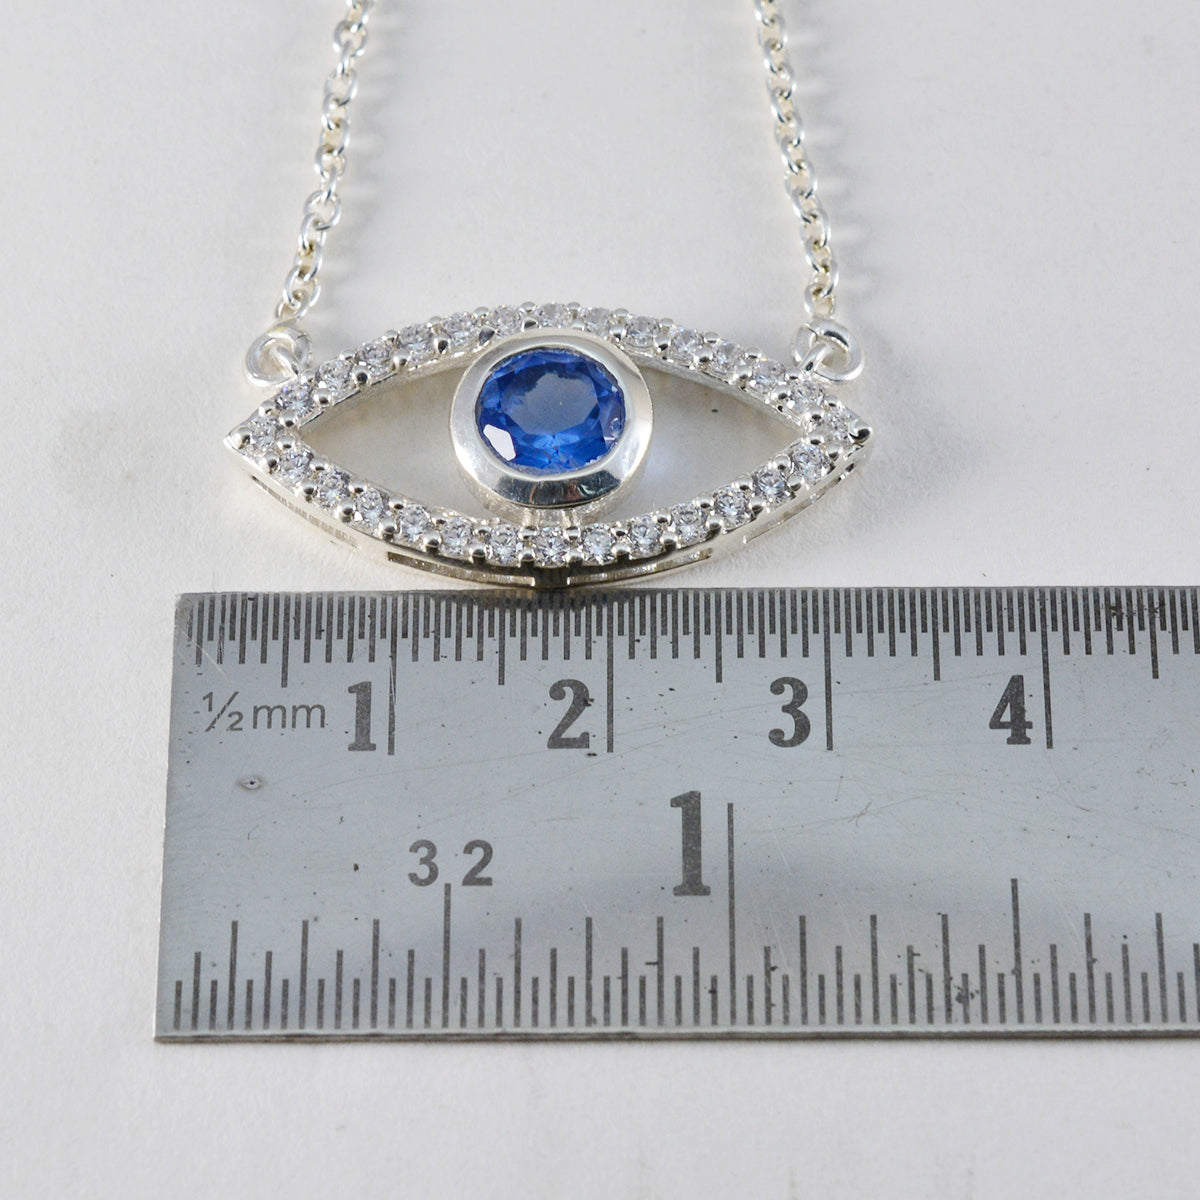 riyo fanciable gemma rotonda sfaccettata blu zaffiro blu cz 1145 ciondolo in argento sterling regalo per il compleanno